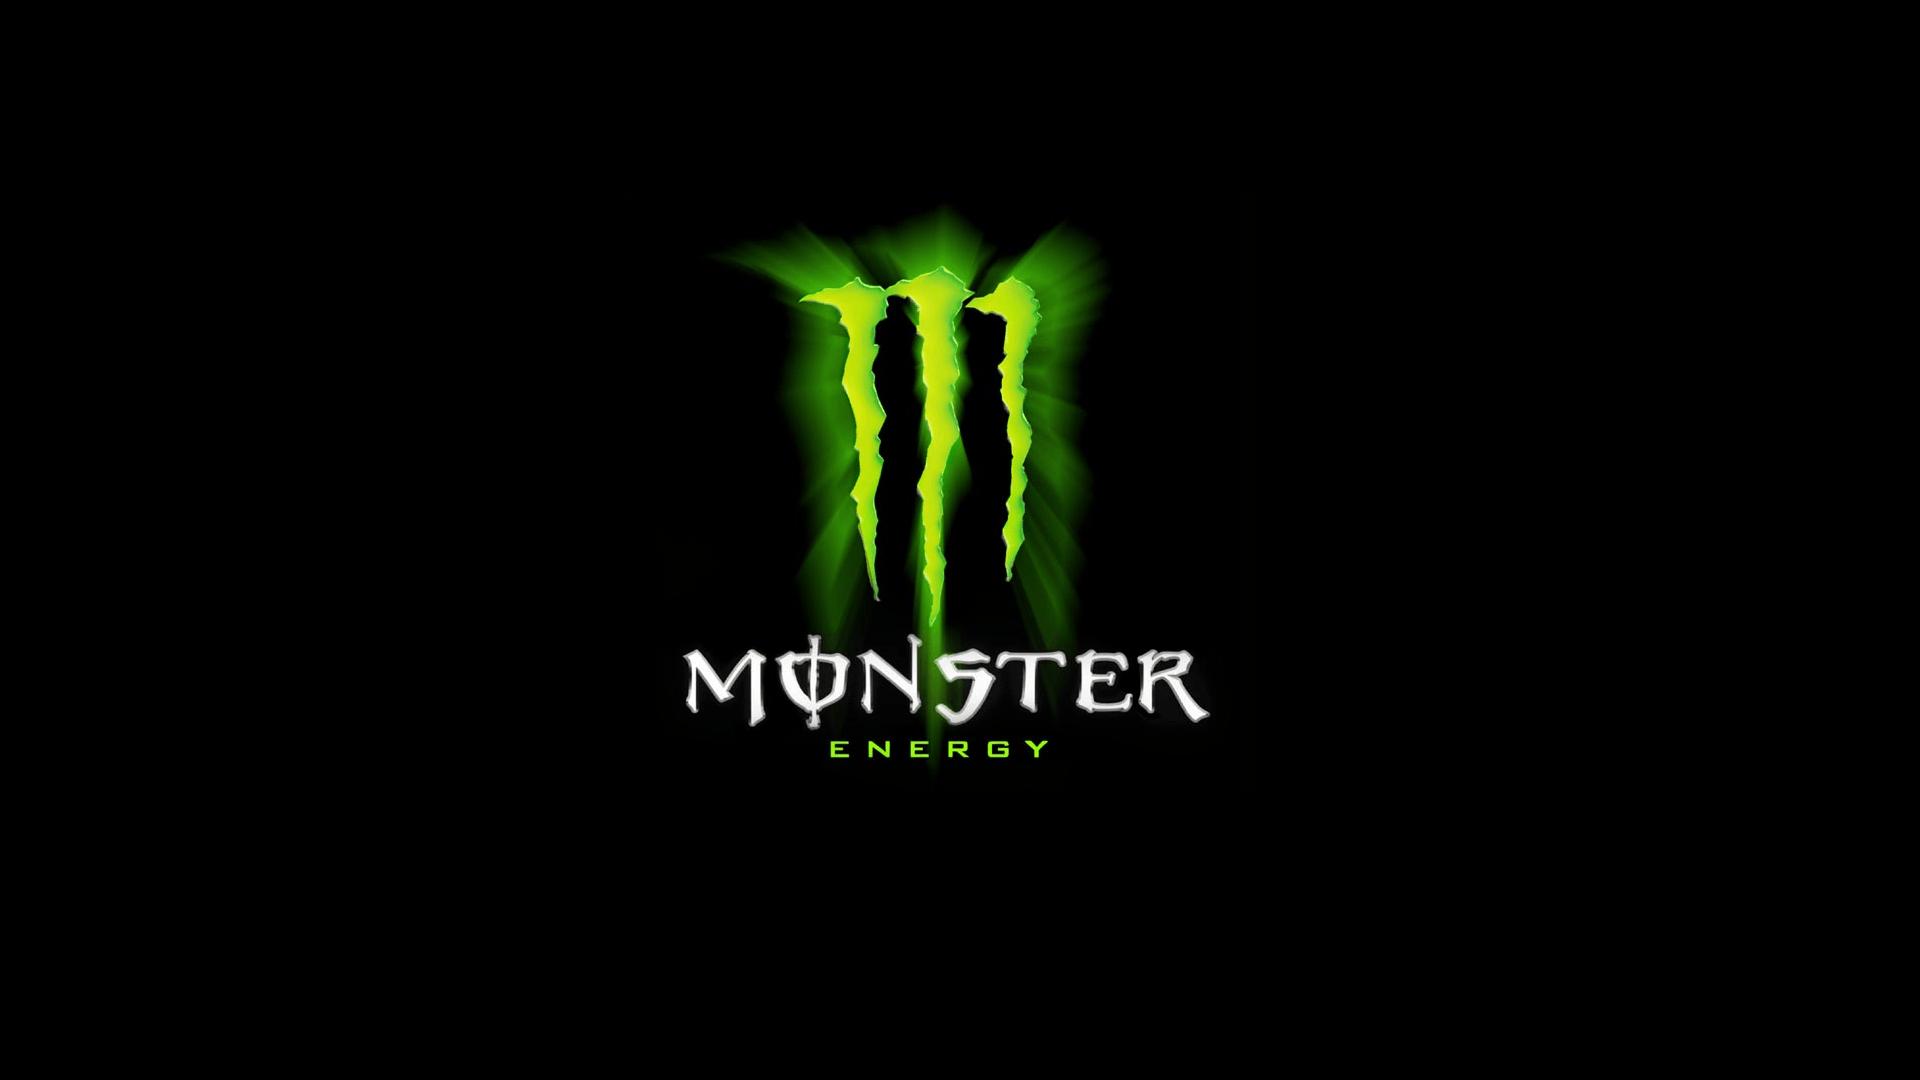 Monster Energy 4k Wallpaper Download For Pc, Monster Energy, Other